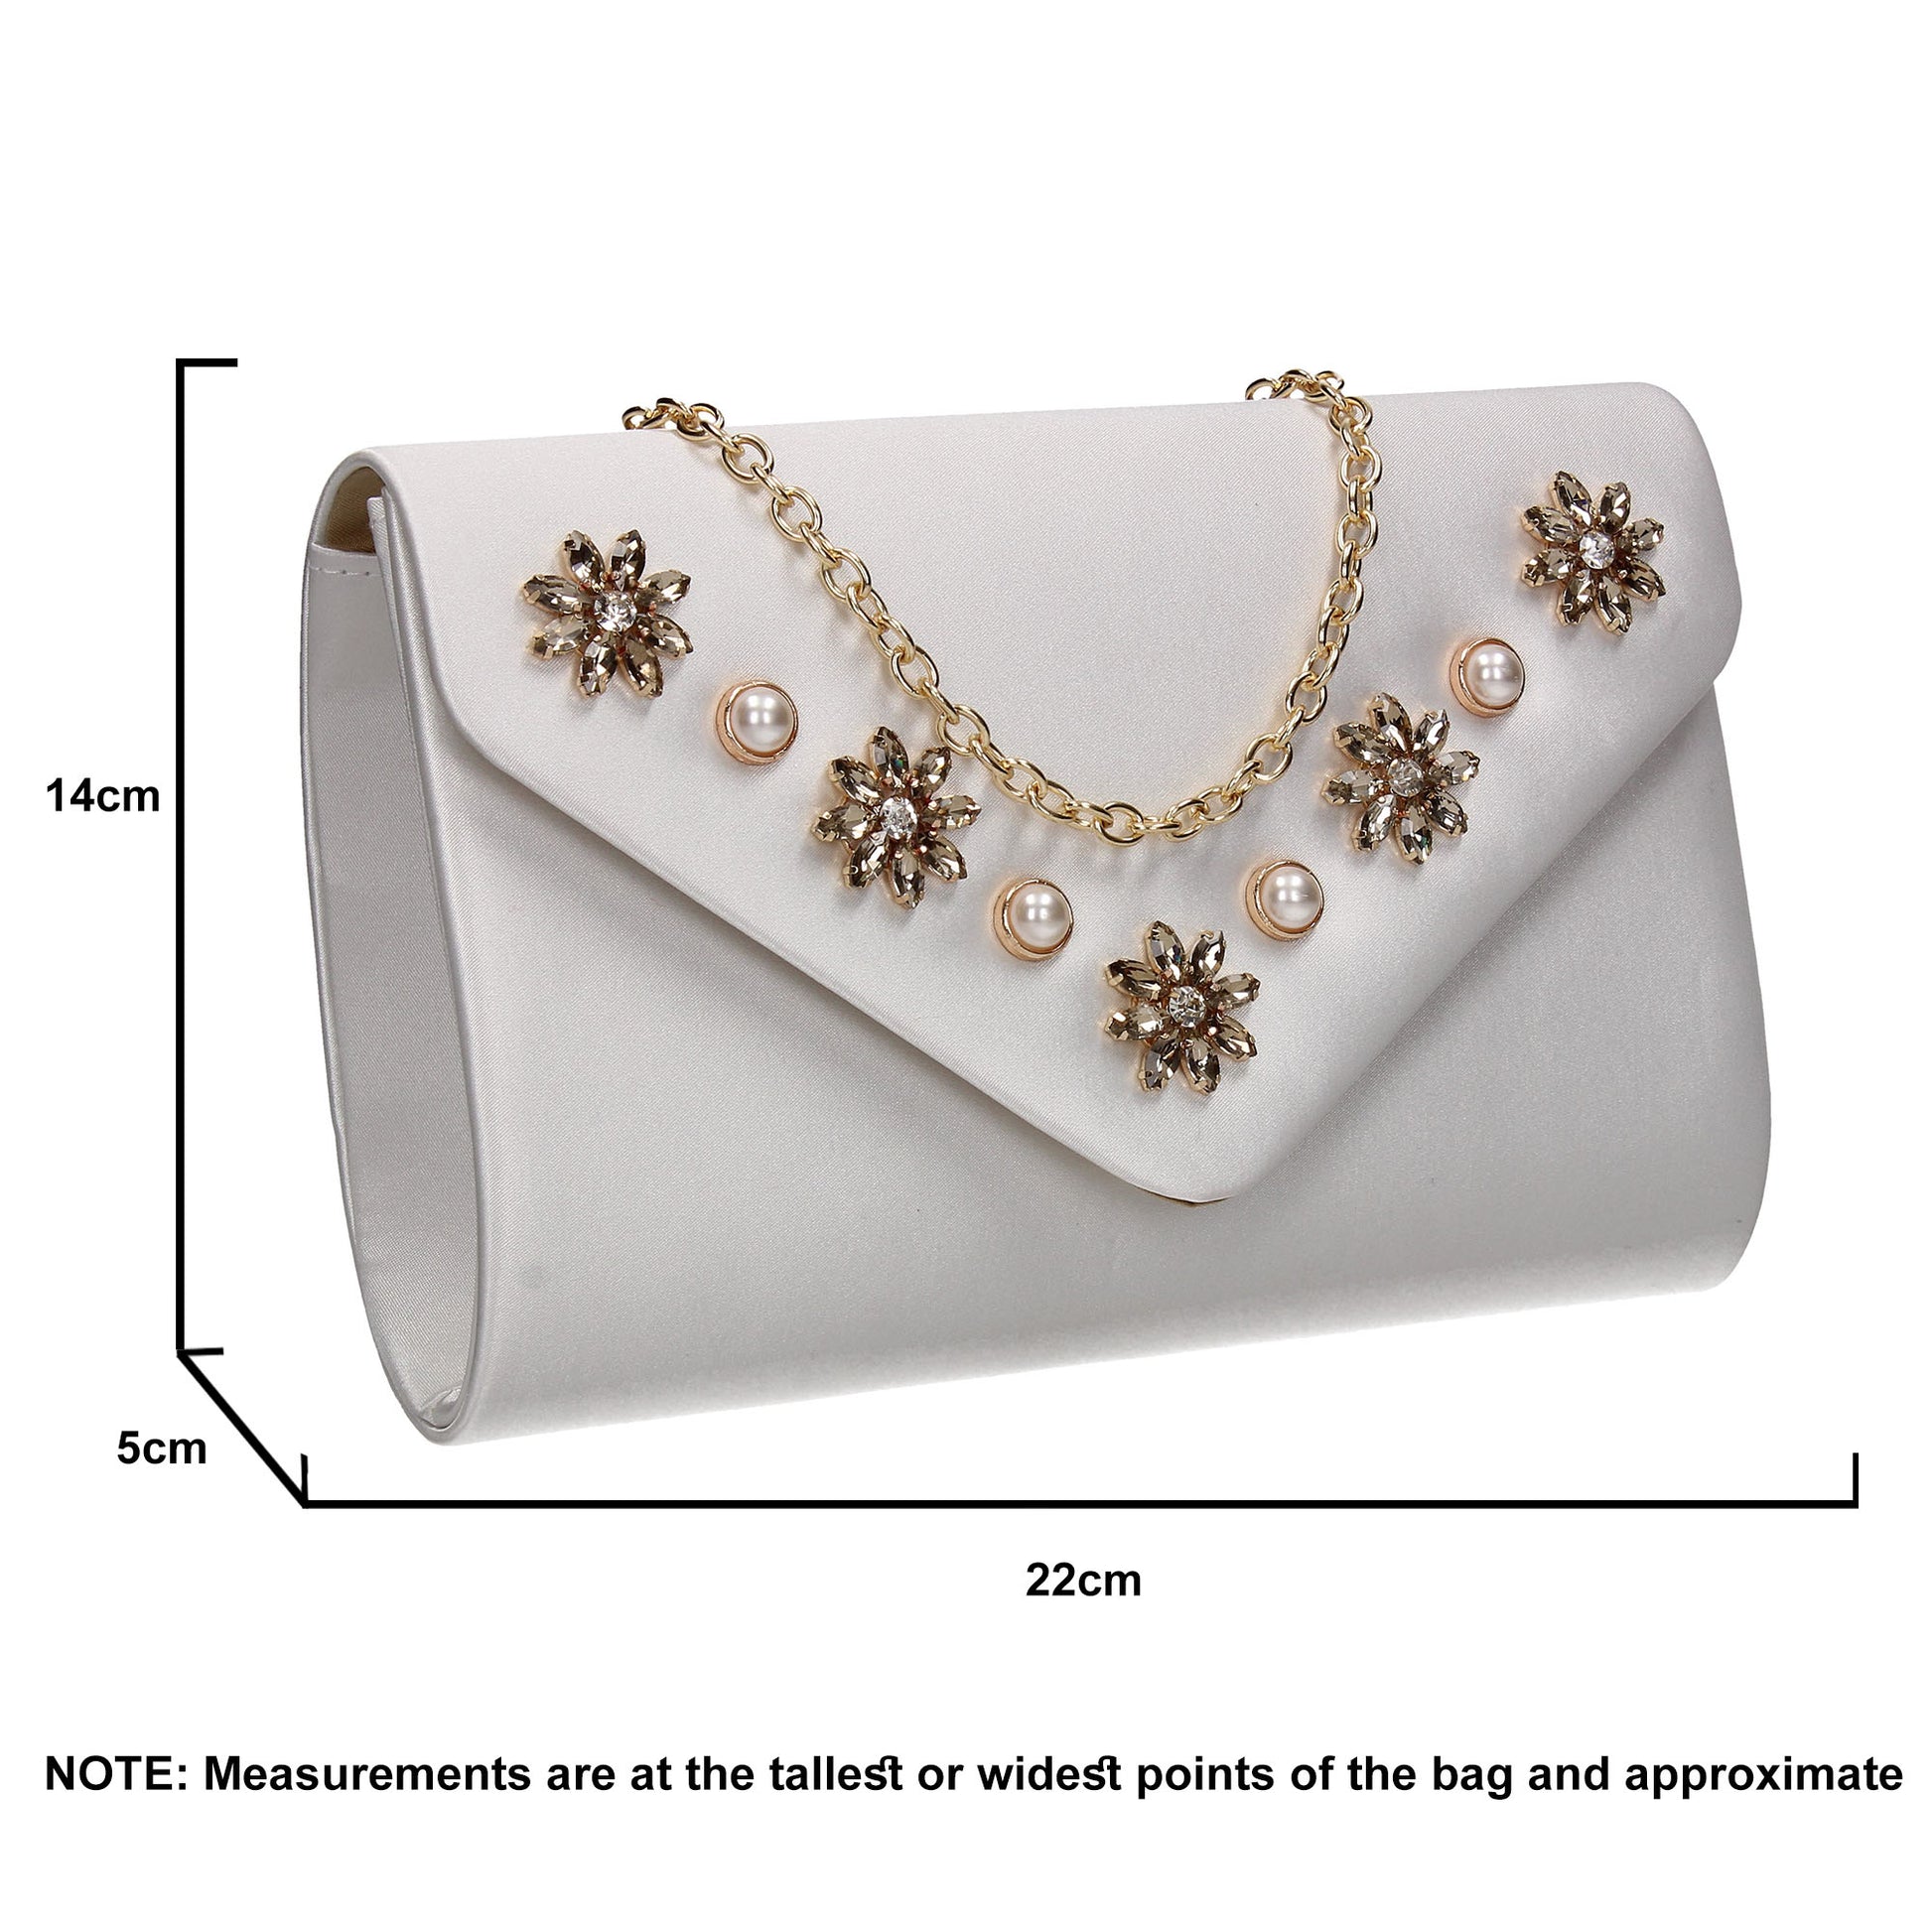 SWANKYSWANS Leila Clutch Bag Cream Cute Cheap Clutch Bag For Weddings School and Work